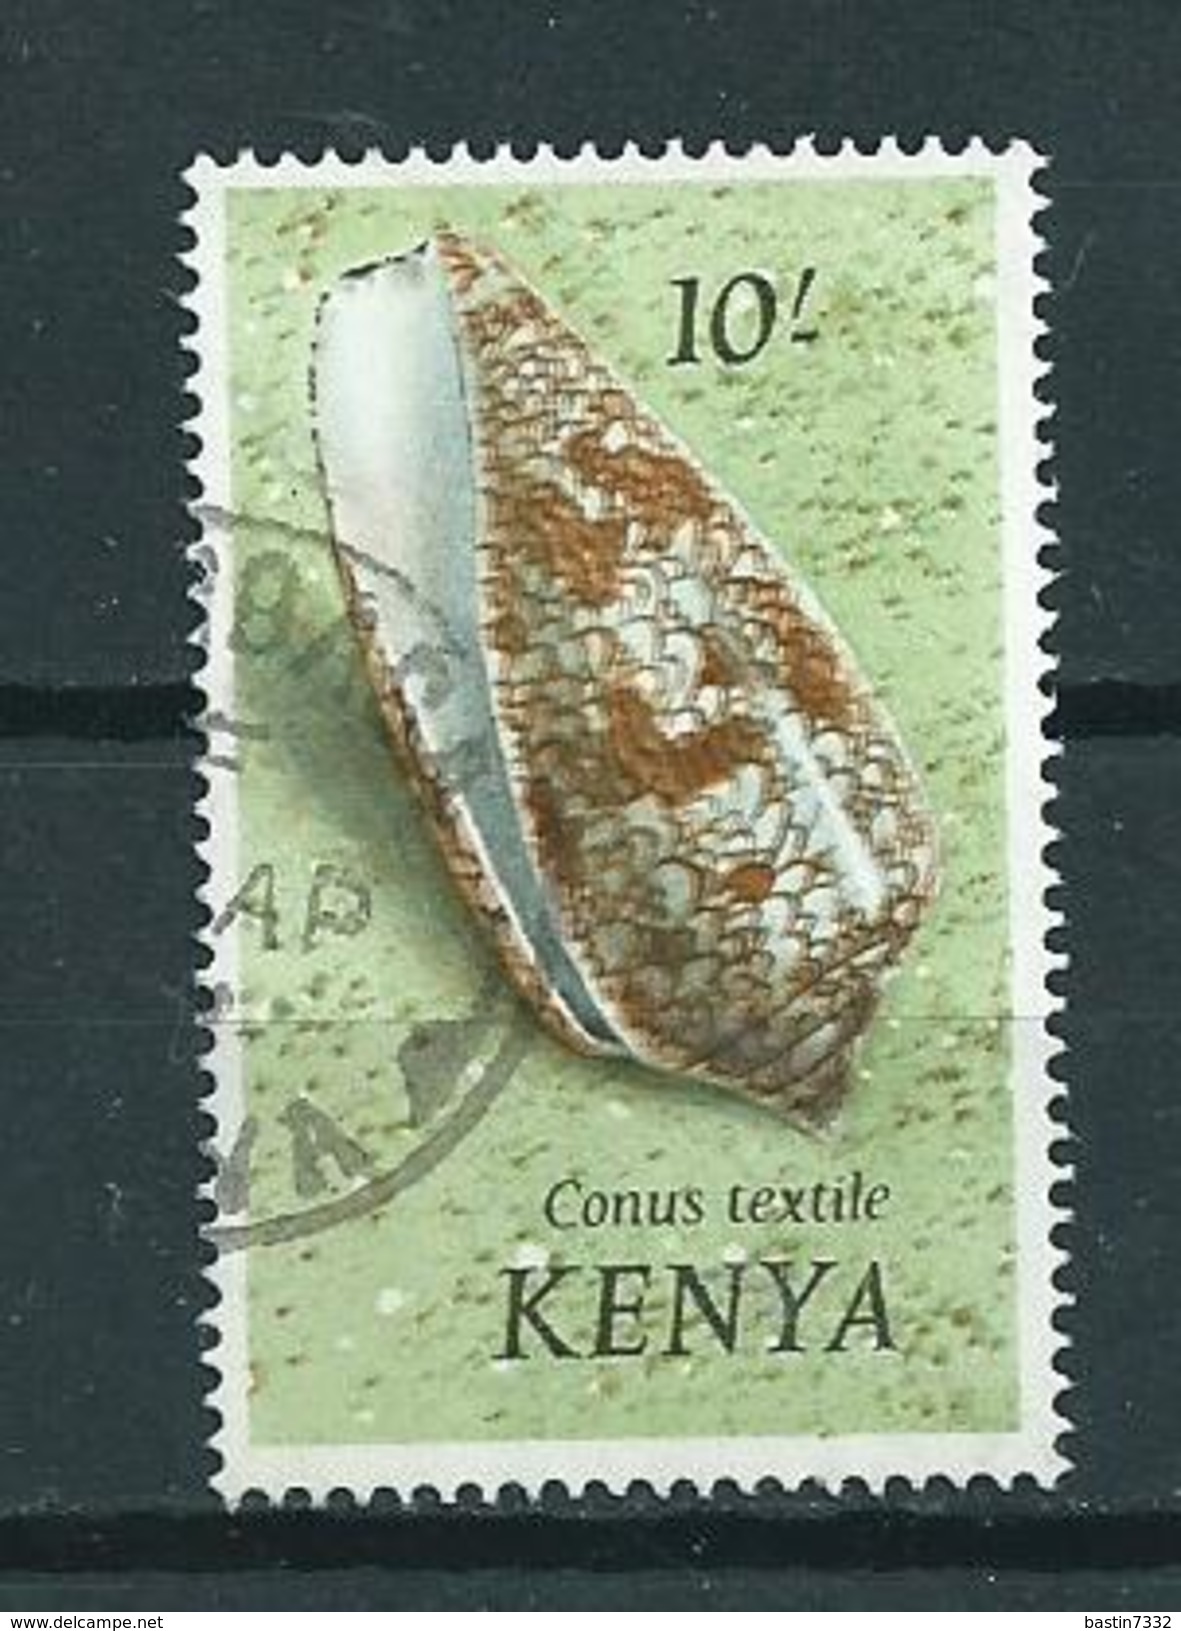 1971 Kenia 10'sh Shell,schelpen Used/gebruikt/oblitere - Kenia (1963-...)